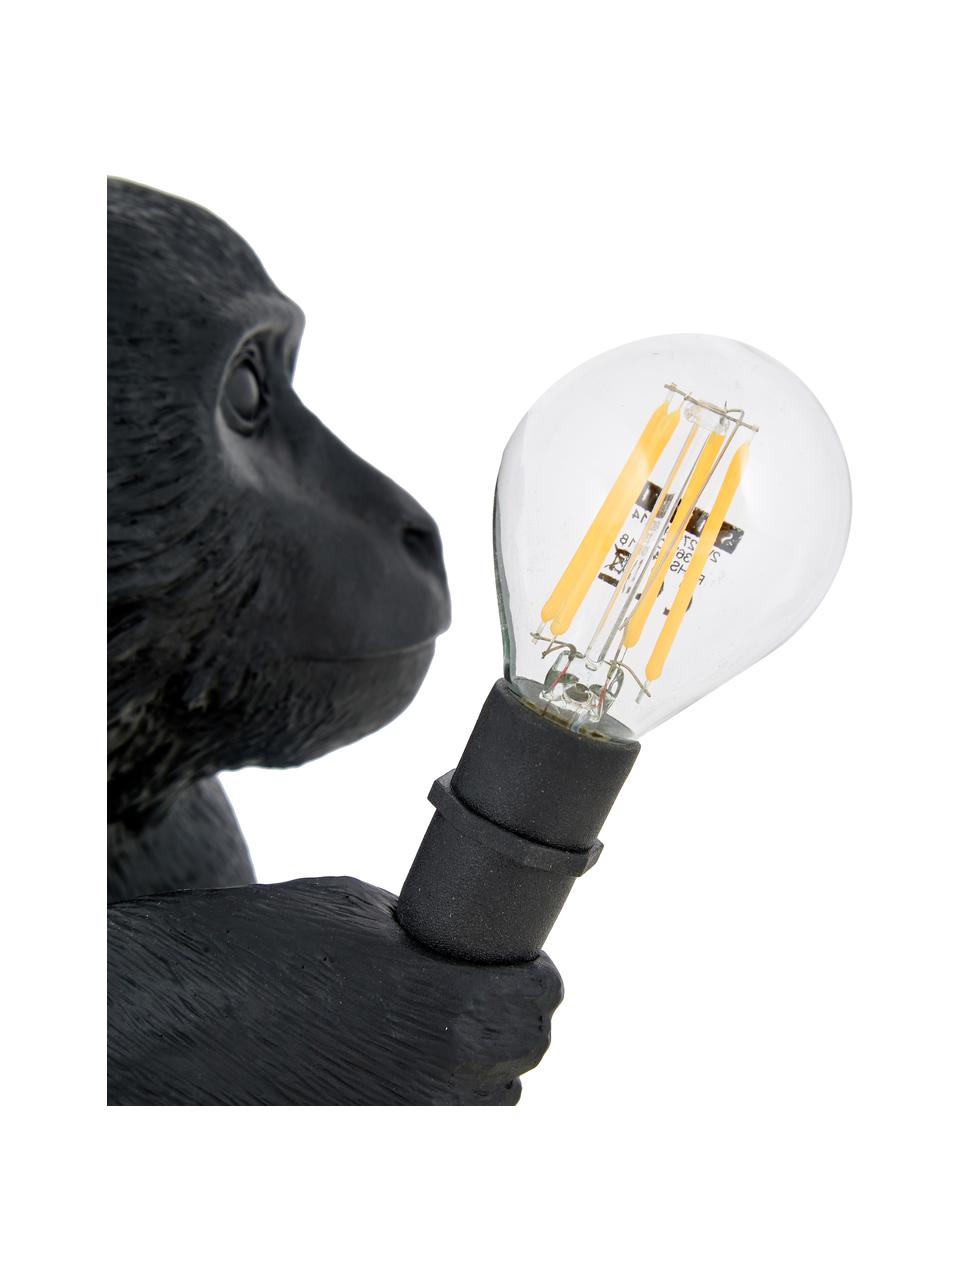 Design Außentischlampe Monkey mit Stecker, Leuchte: Kunstharz, Schwarz, B 34 x H 32 cm